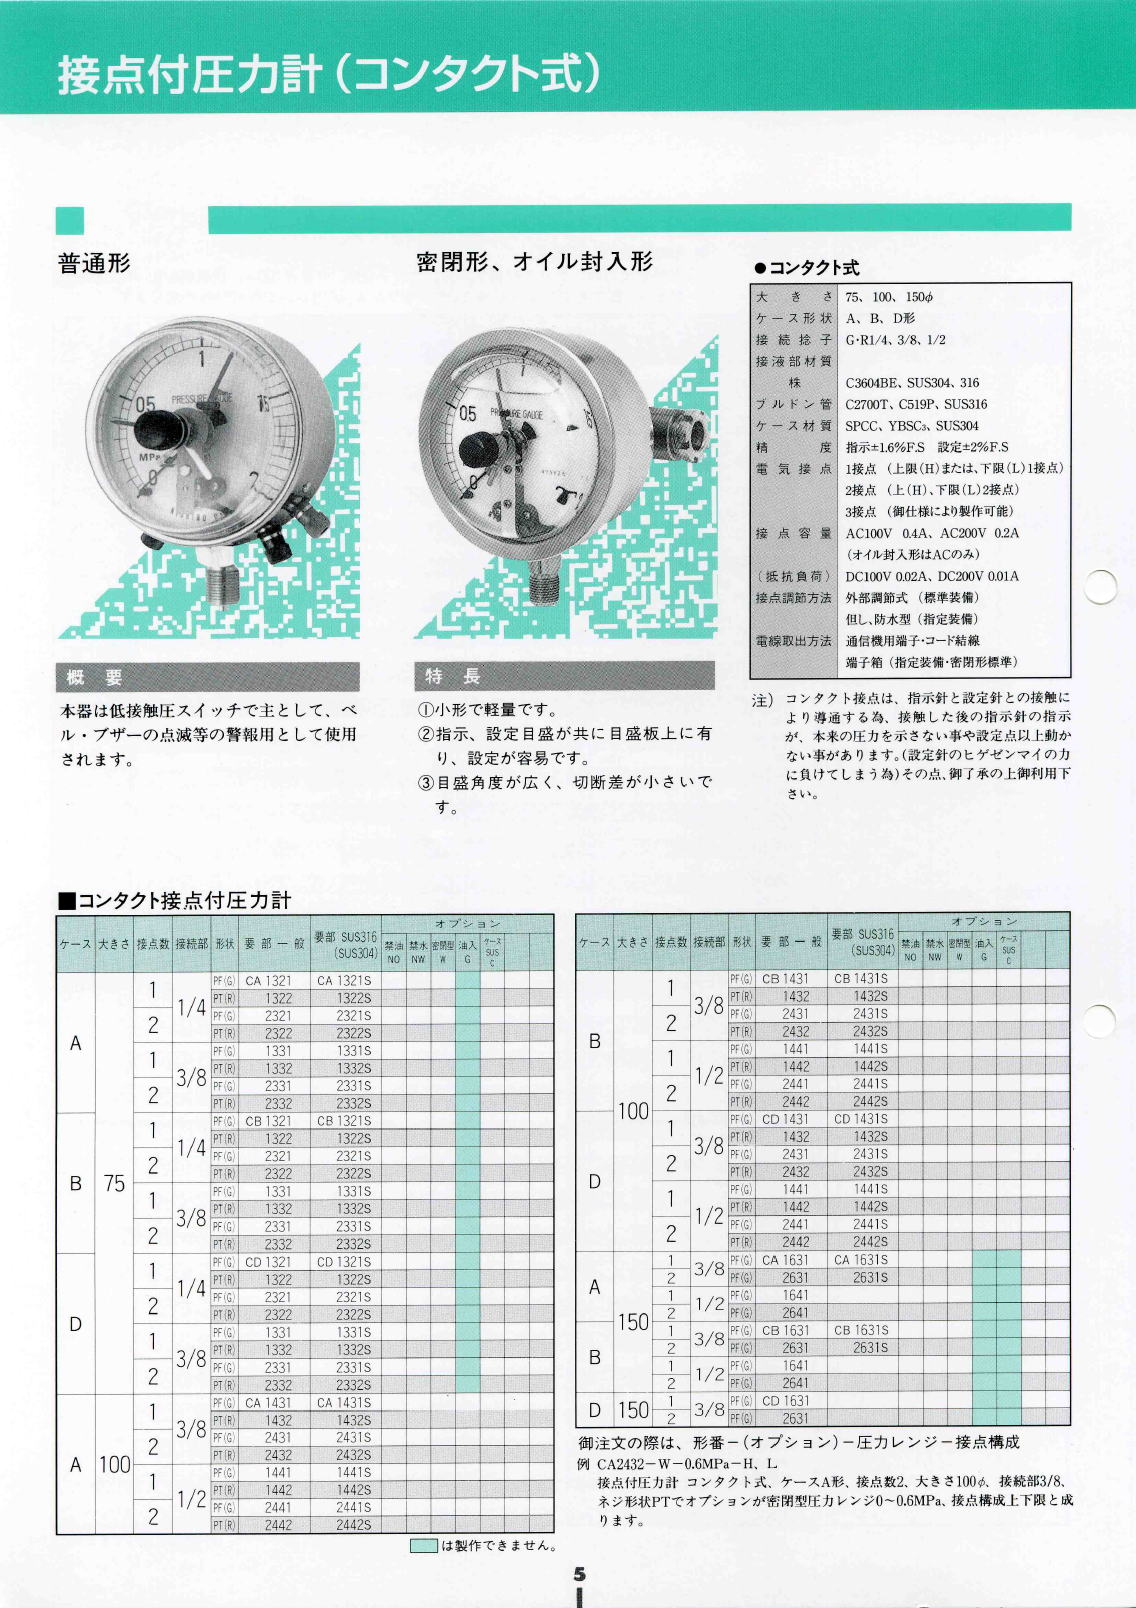 株式会社西野製作所　接点付圧力計（コンタクト式）　Pressure gauge with contacts (contact type)